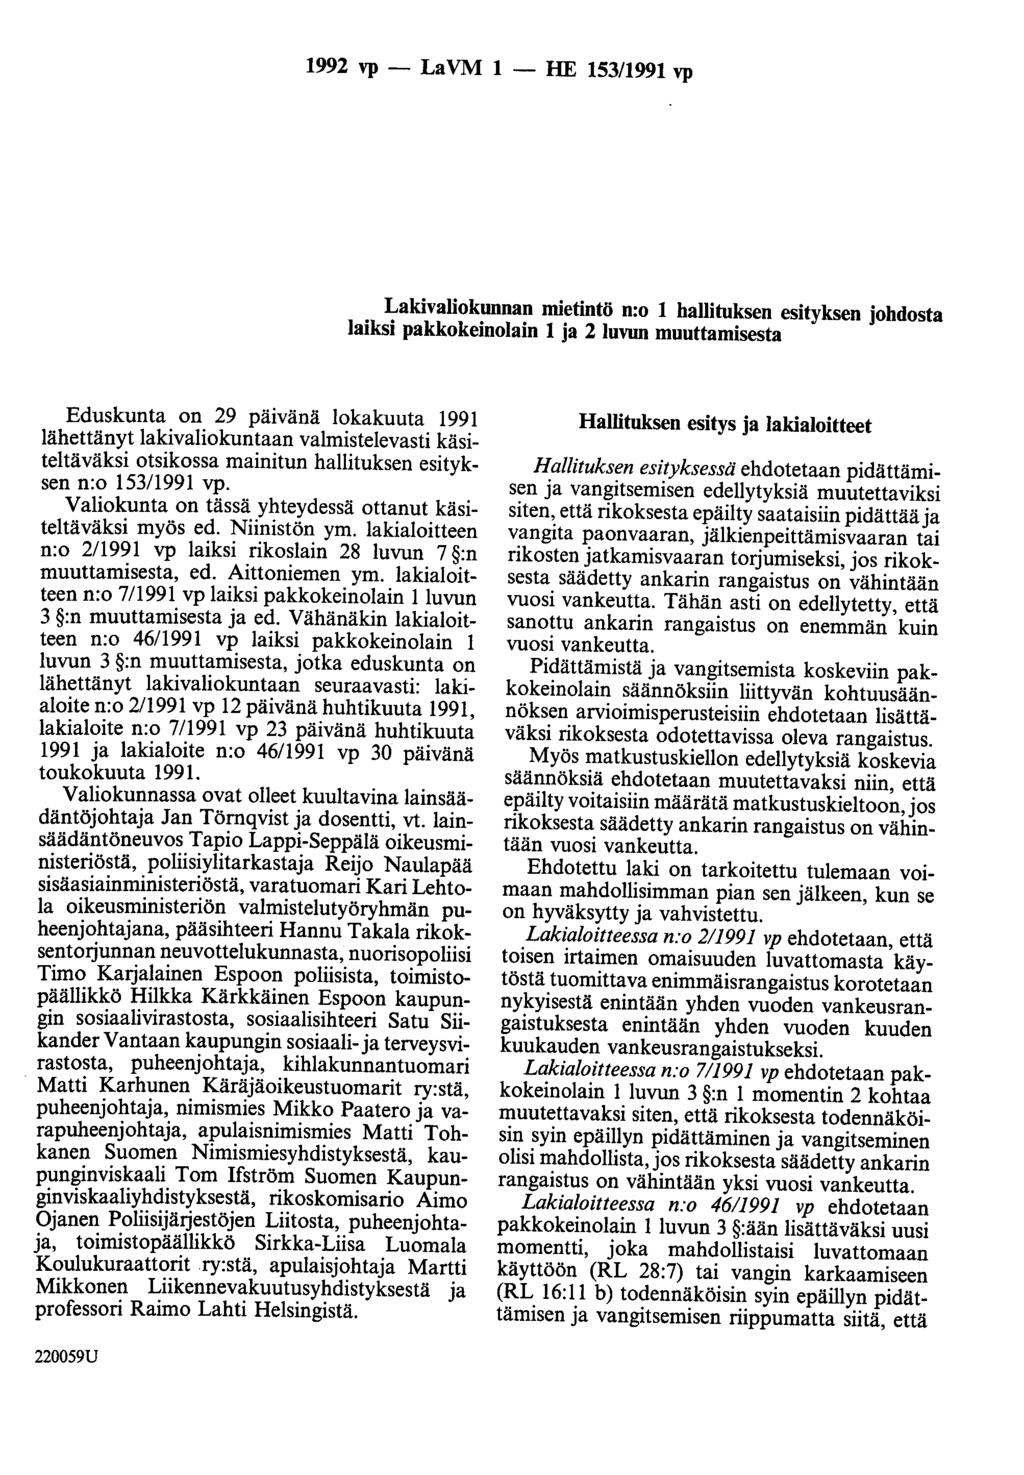 1992 vp - LaVM 1 - HE 153/1991 vp Lakivaliokunnan mietintö n:o 1 hallituksen esityksen johdosta laiksi pakkokeinolain 1 ja 2 luvun muuttamisesta Eduskunta on 29 päivänä lokakuuta 1991 lähettänyt